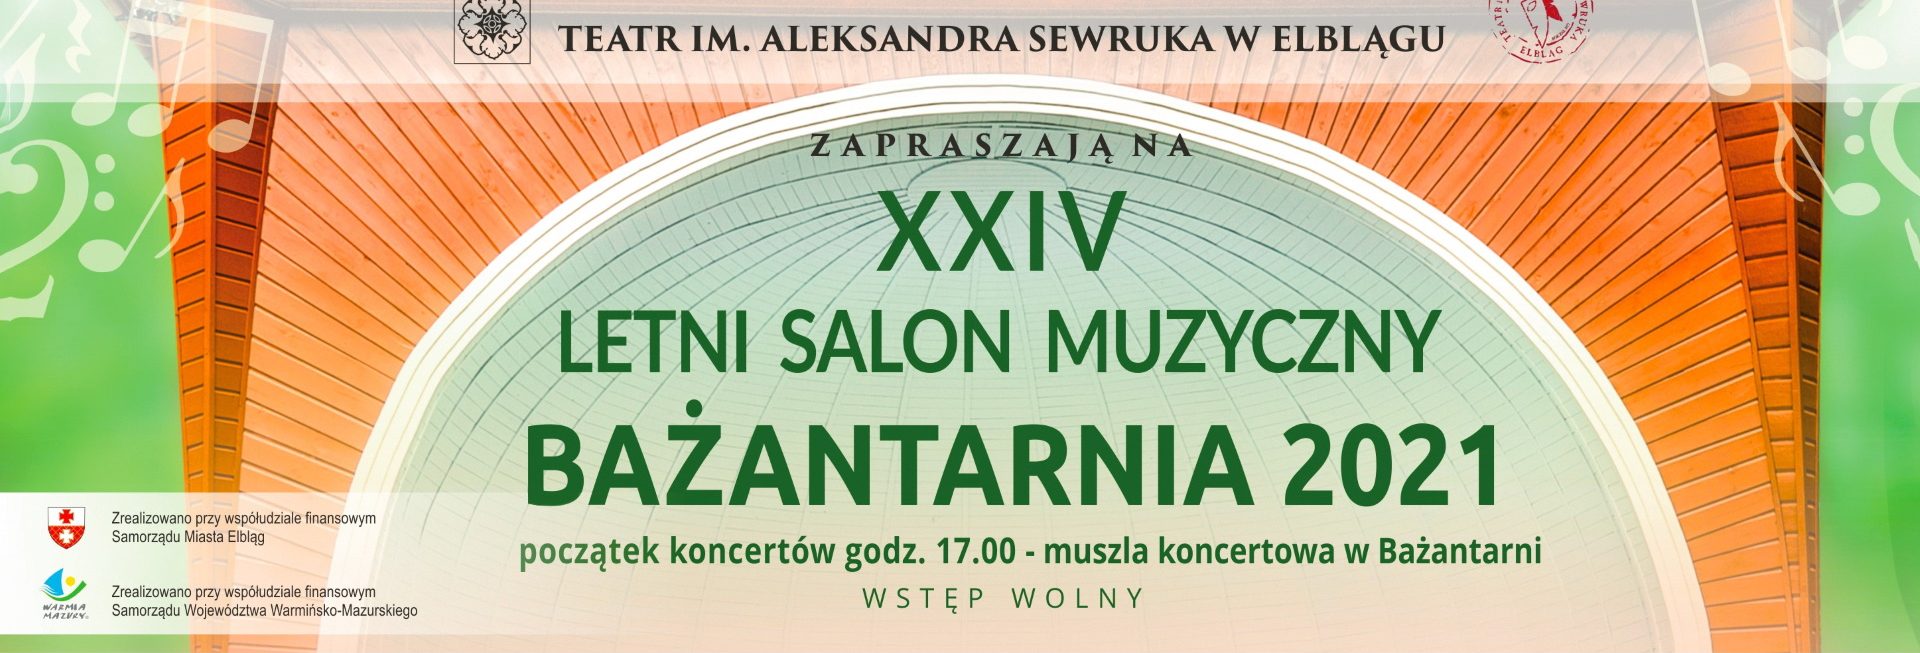 Plakat graficzny zapraszający do Elbląga na imprezę plenerową 24. Letni Salon Muzyczny "Bażantarnia 2021" - Elbląg. Na plakacie napisy na pomarańczowym tle.